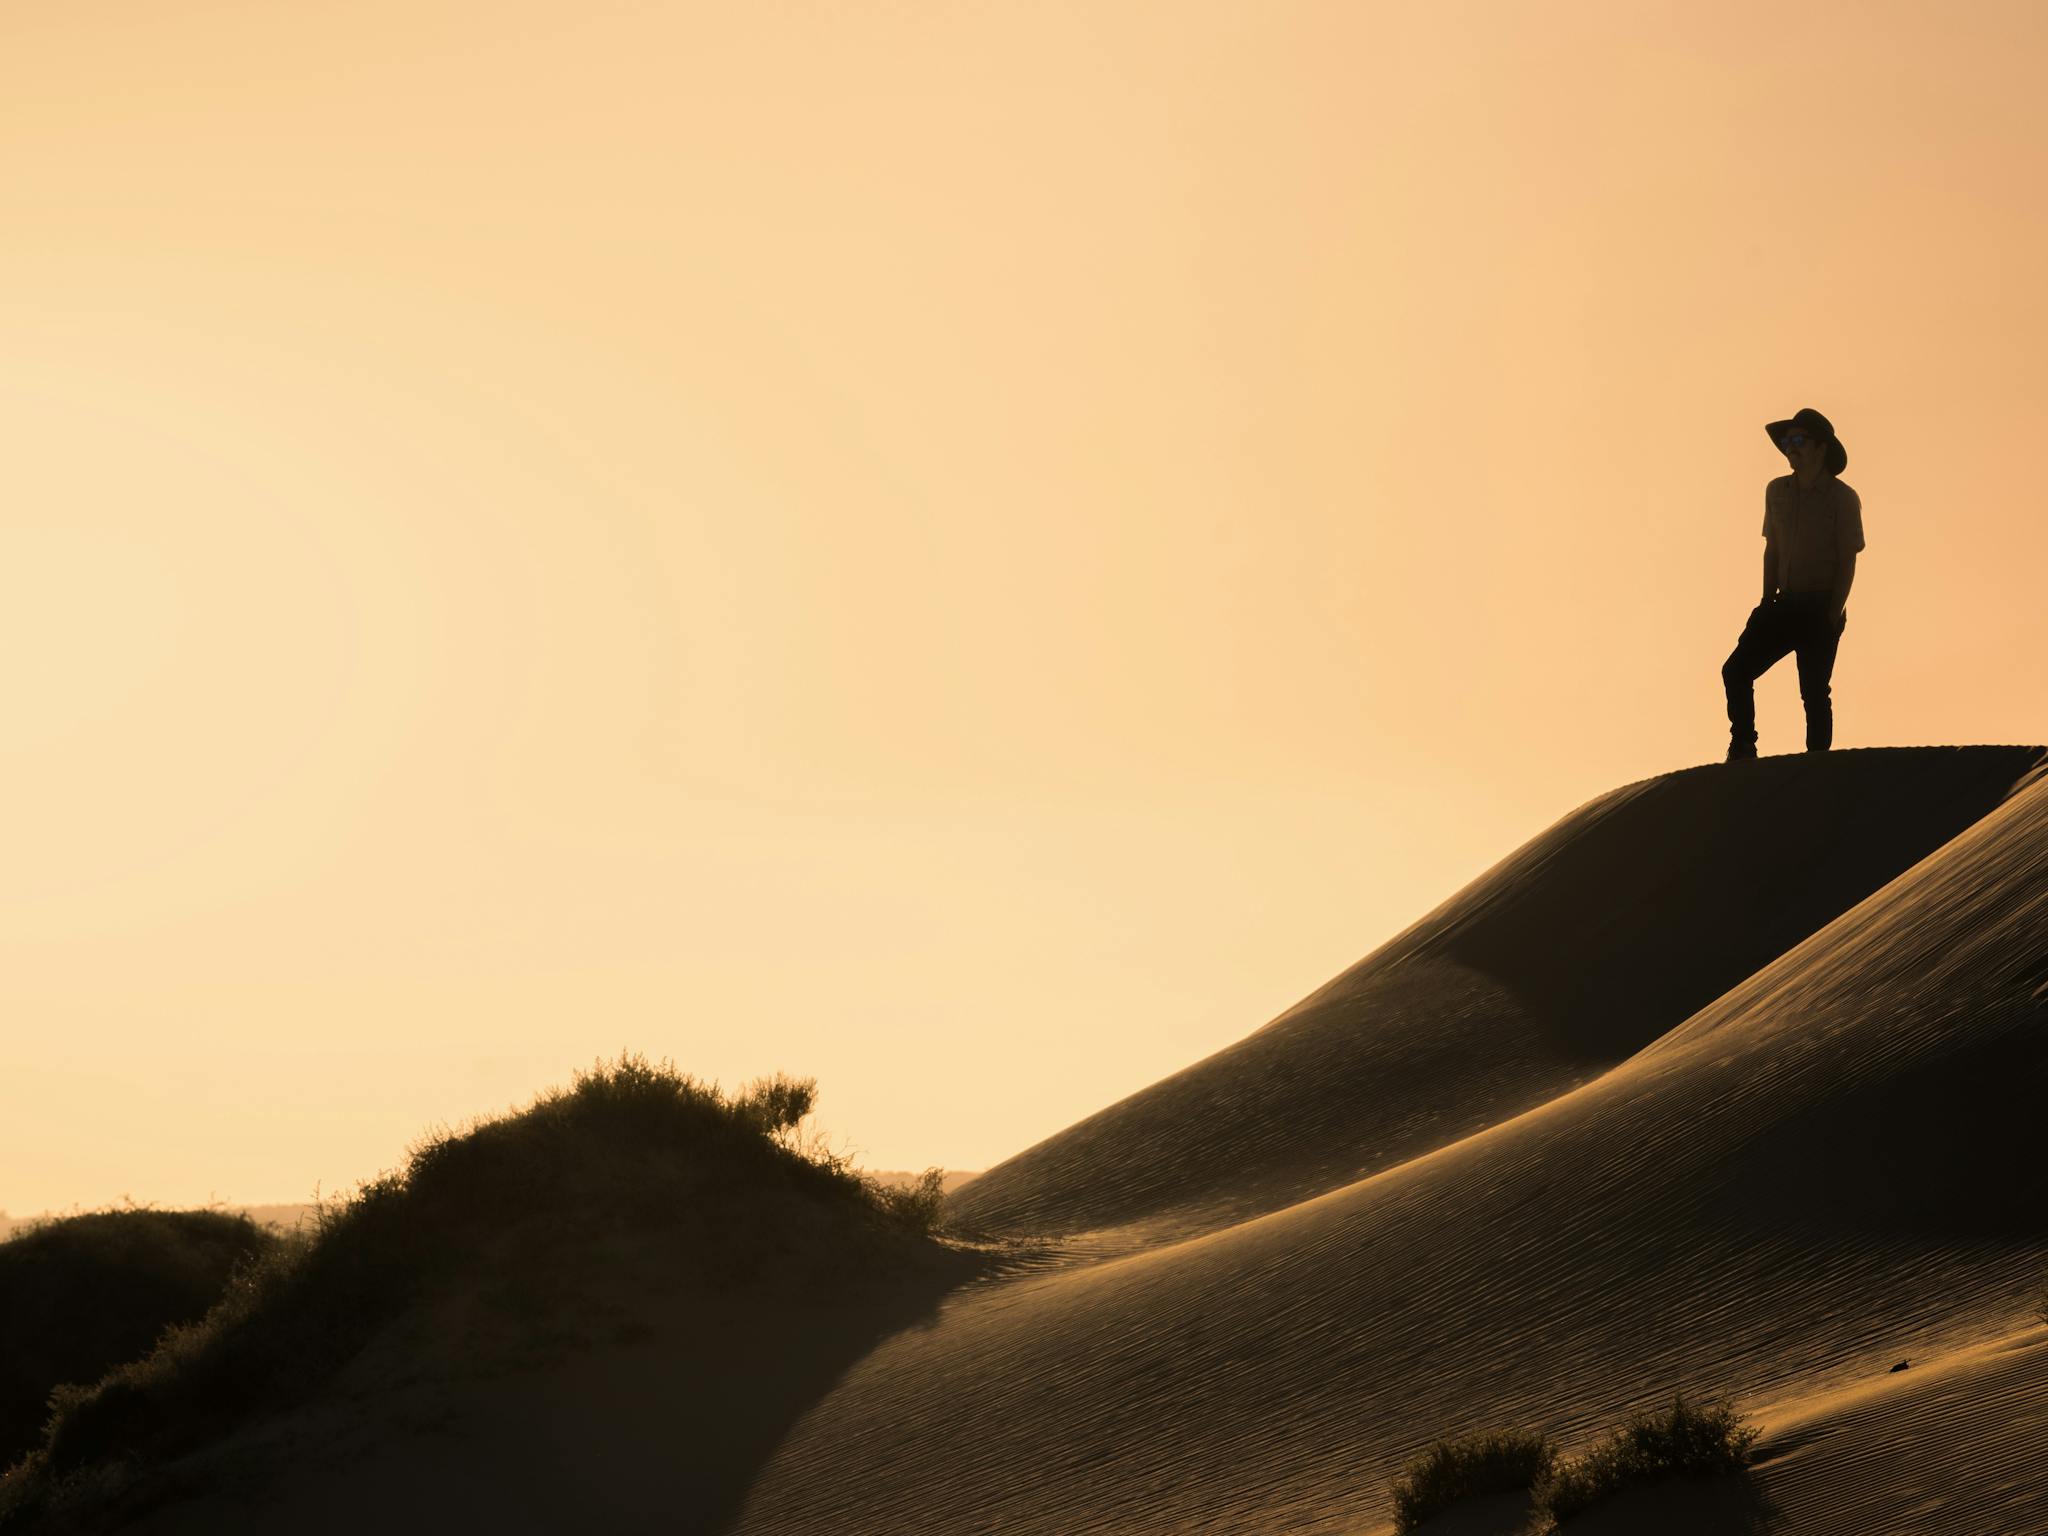 Photograph the sunrise amongst the Mungo Sand Dunes